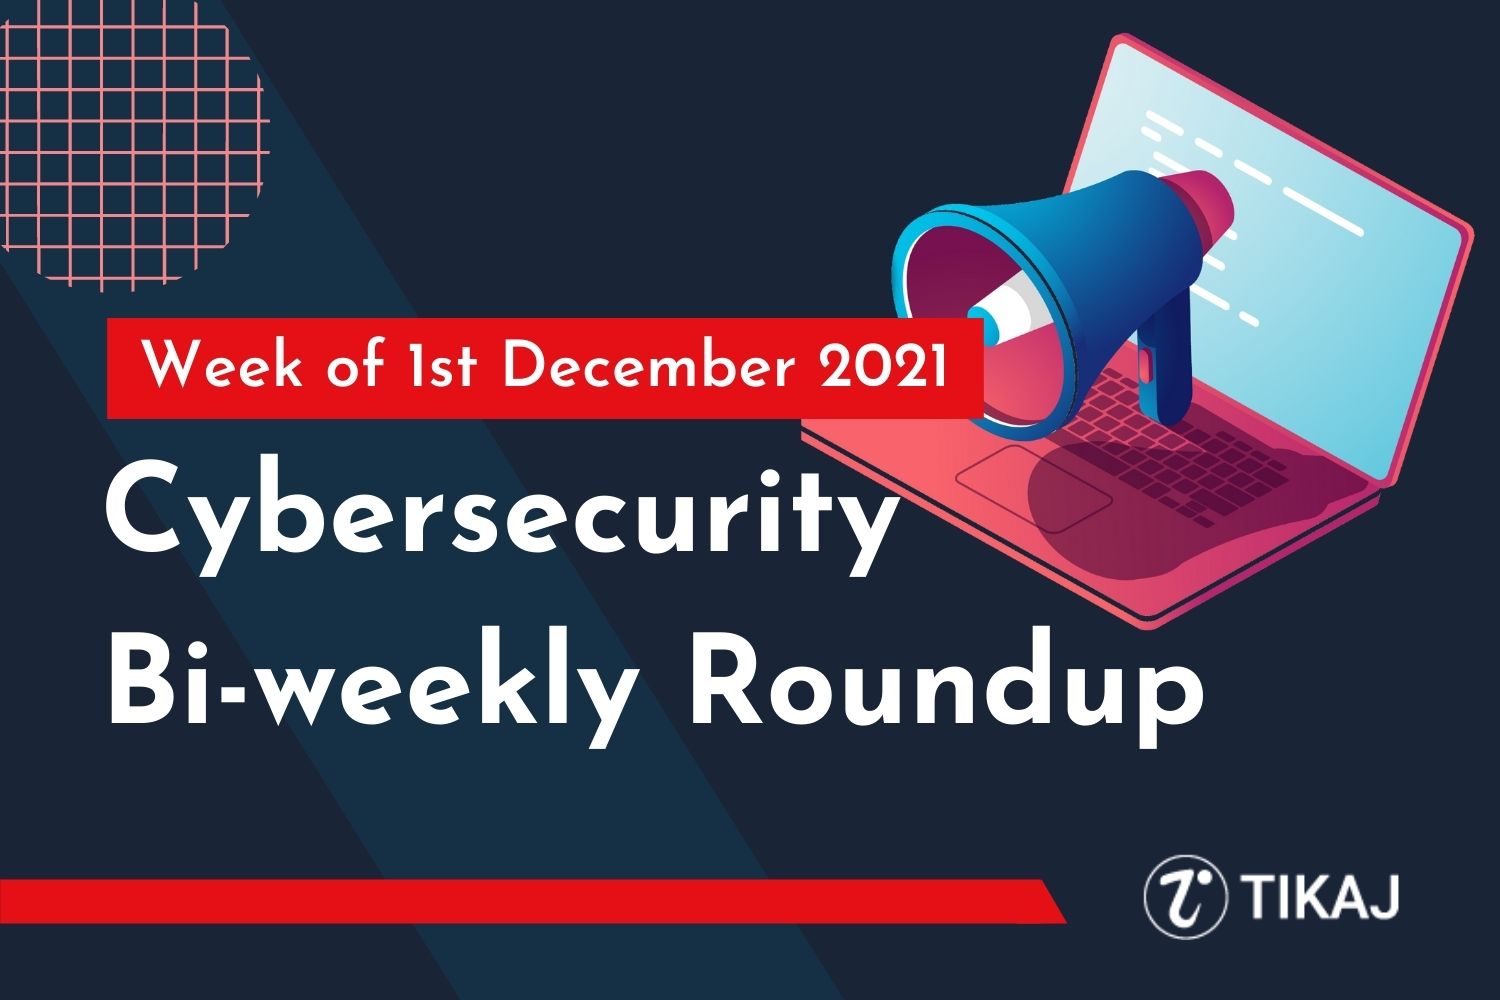 Cybersecurity Bi-weekly Roundup: Week of 1st December